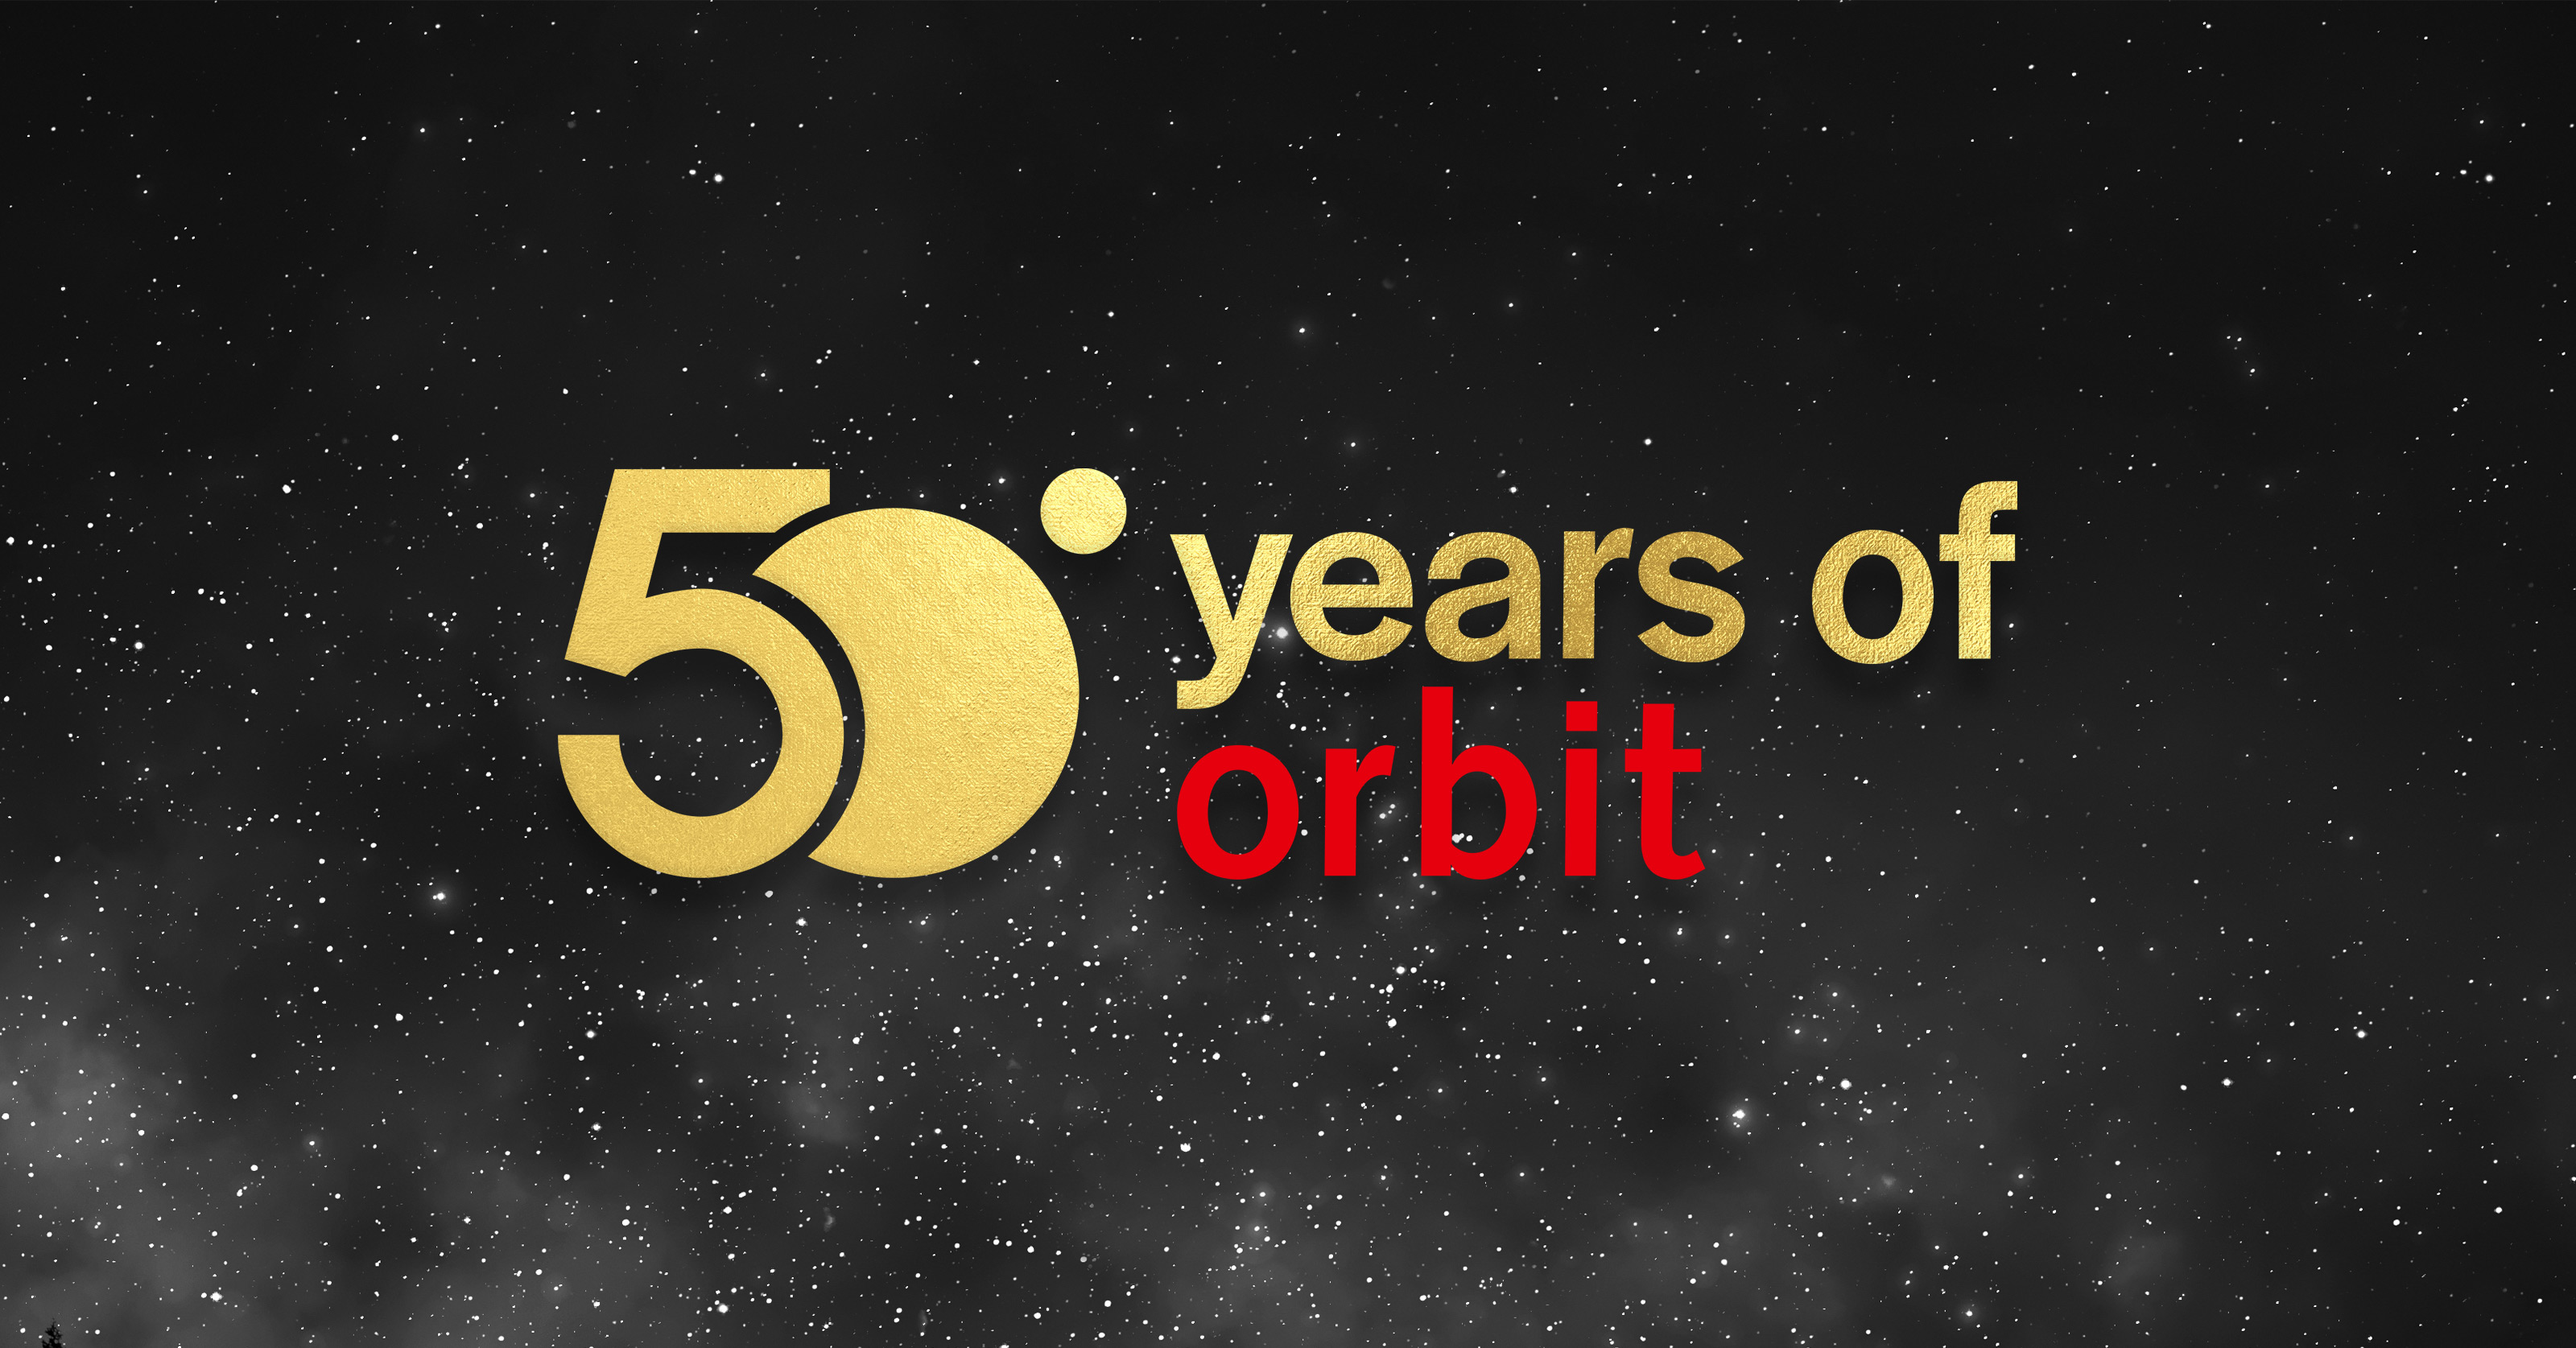 Orbit 50